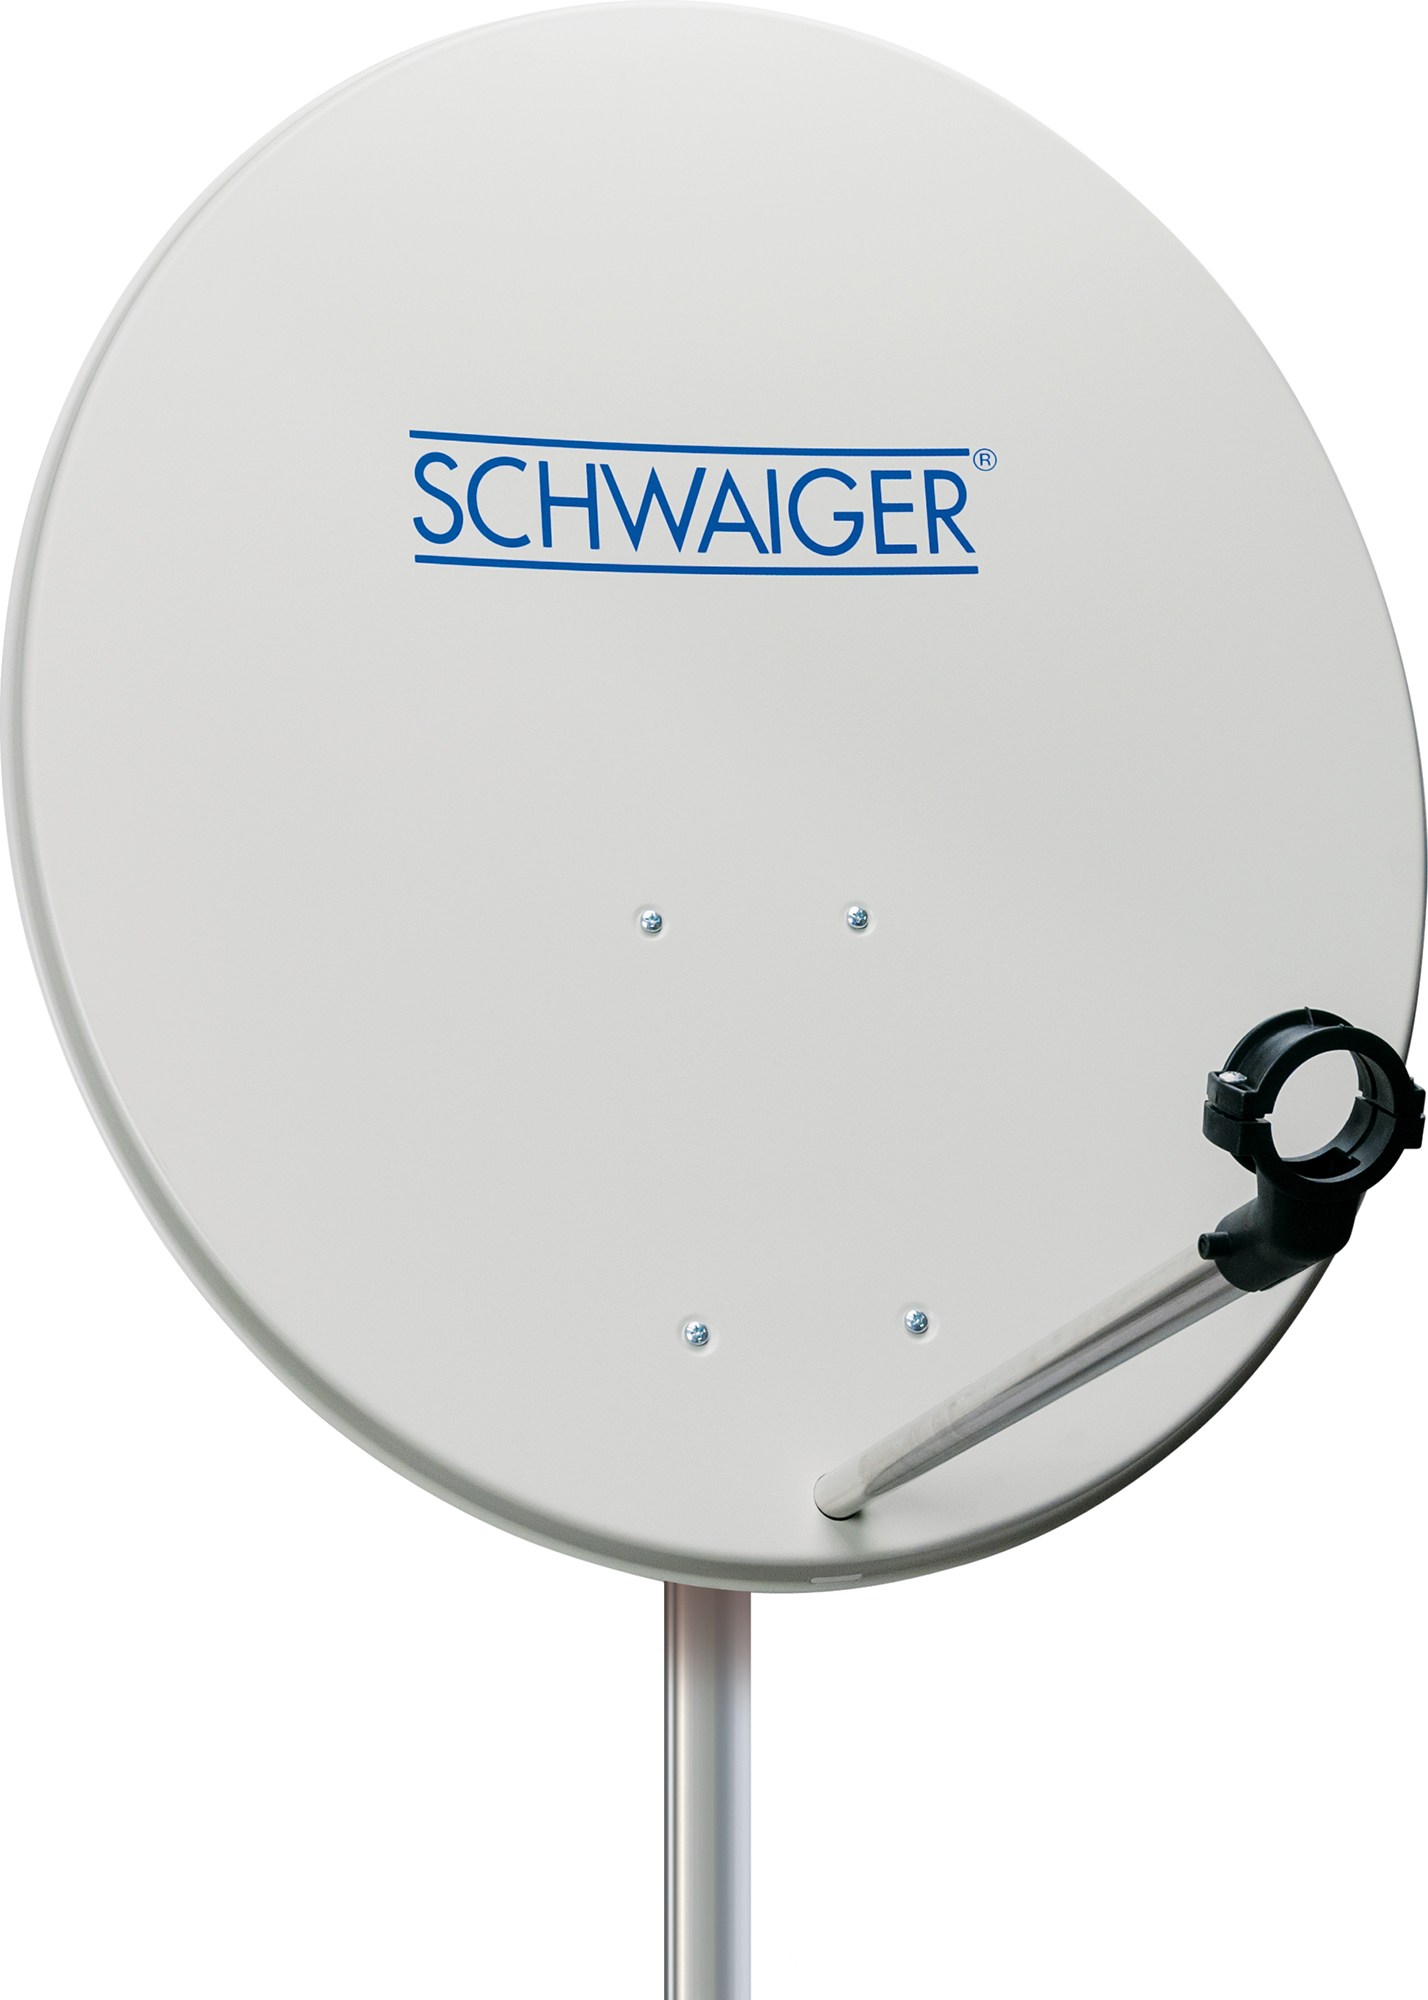 SCHWAIGER -ALD0013- Sat Anlage Twin cm, (80 LNB)